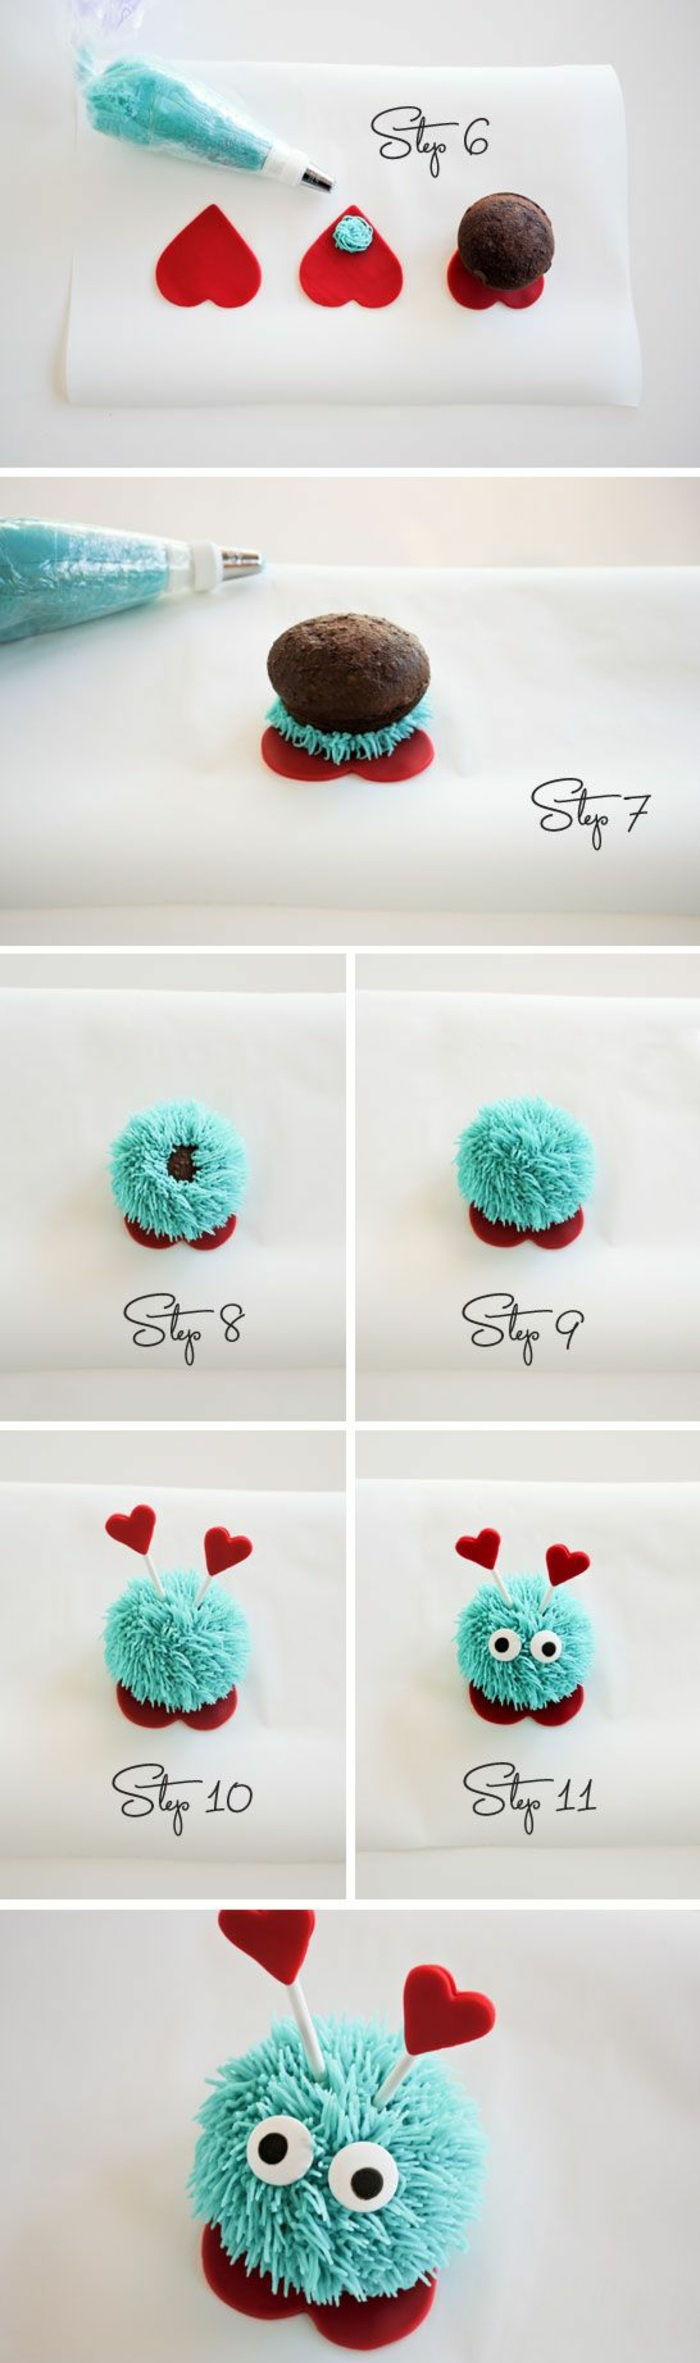 cupcakes decorați cu cremă albastră și inimi mici